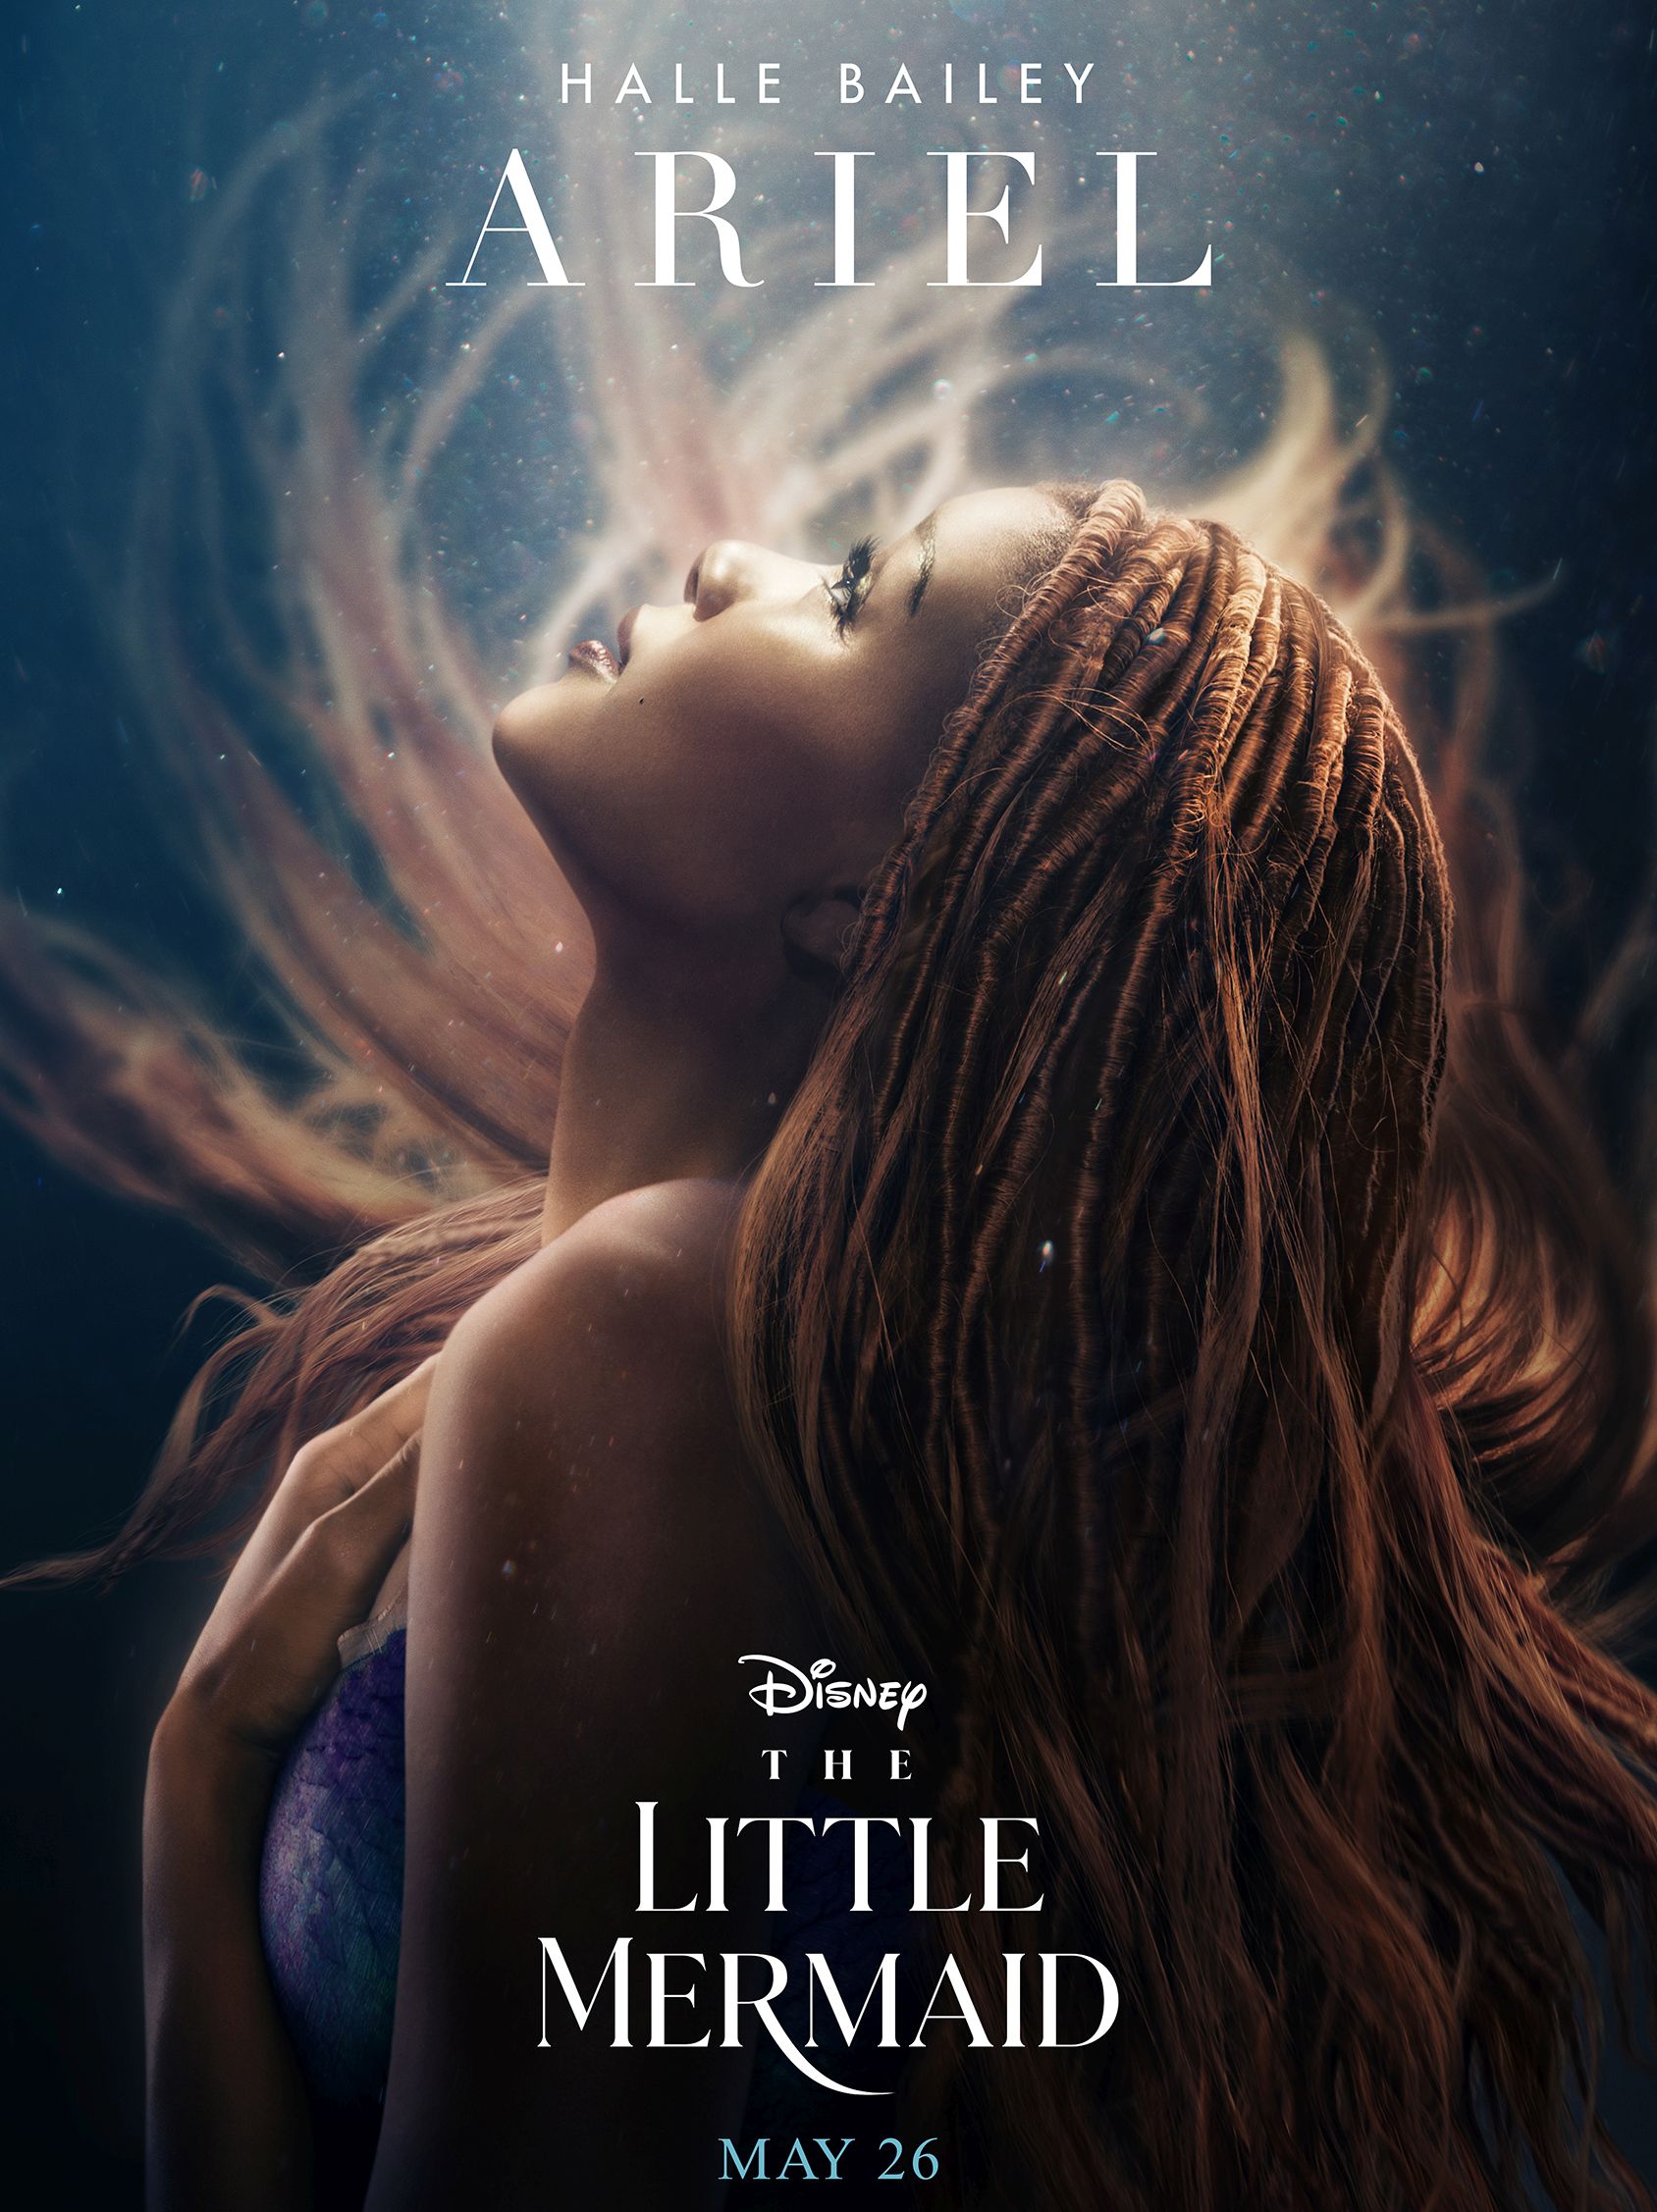 Cartel promocional de "La Sirenita", en el que se ven las rastas de Halle Bailey alteradas para la película. (Disney)